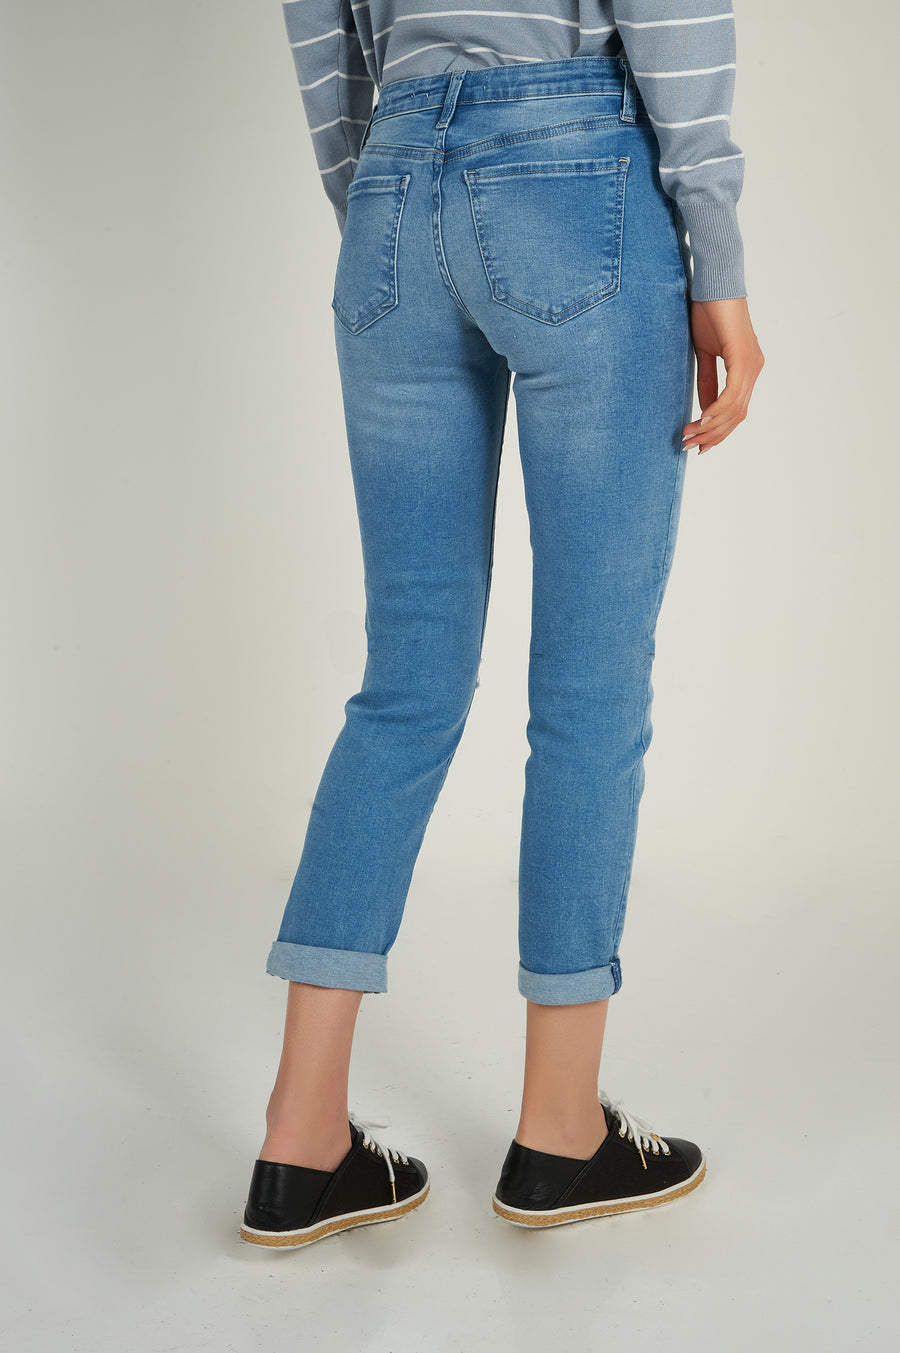 magasinez les jeans pour femmes de chez colori - Shop the jeans from colori 